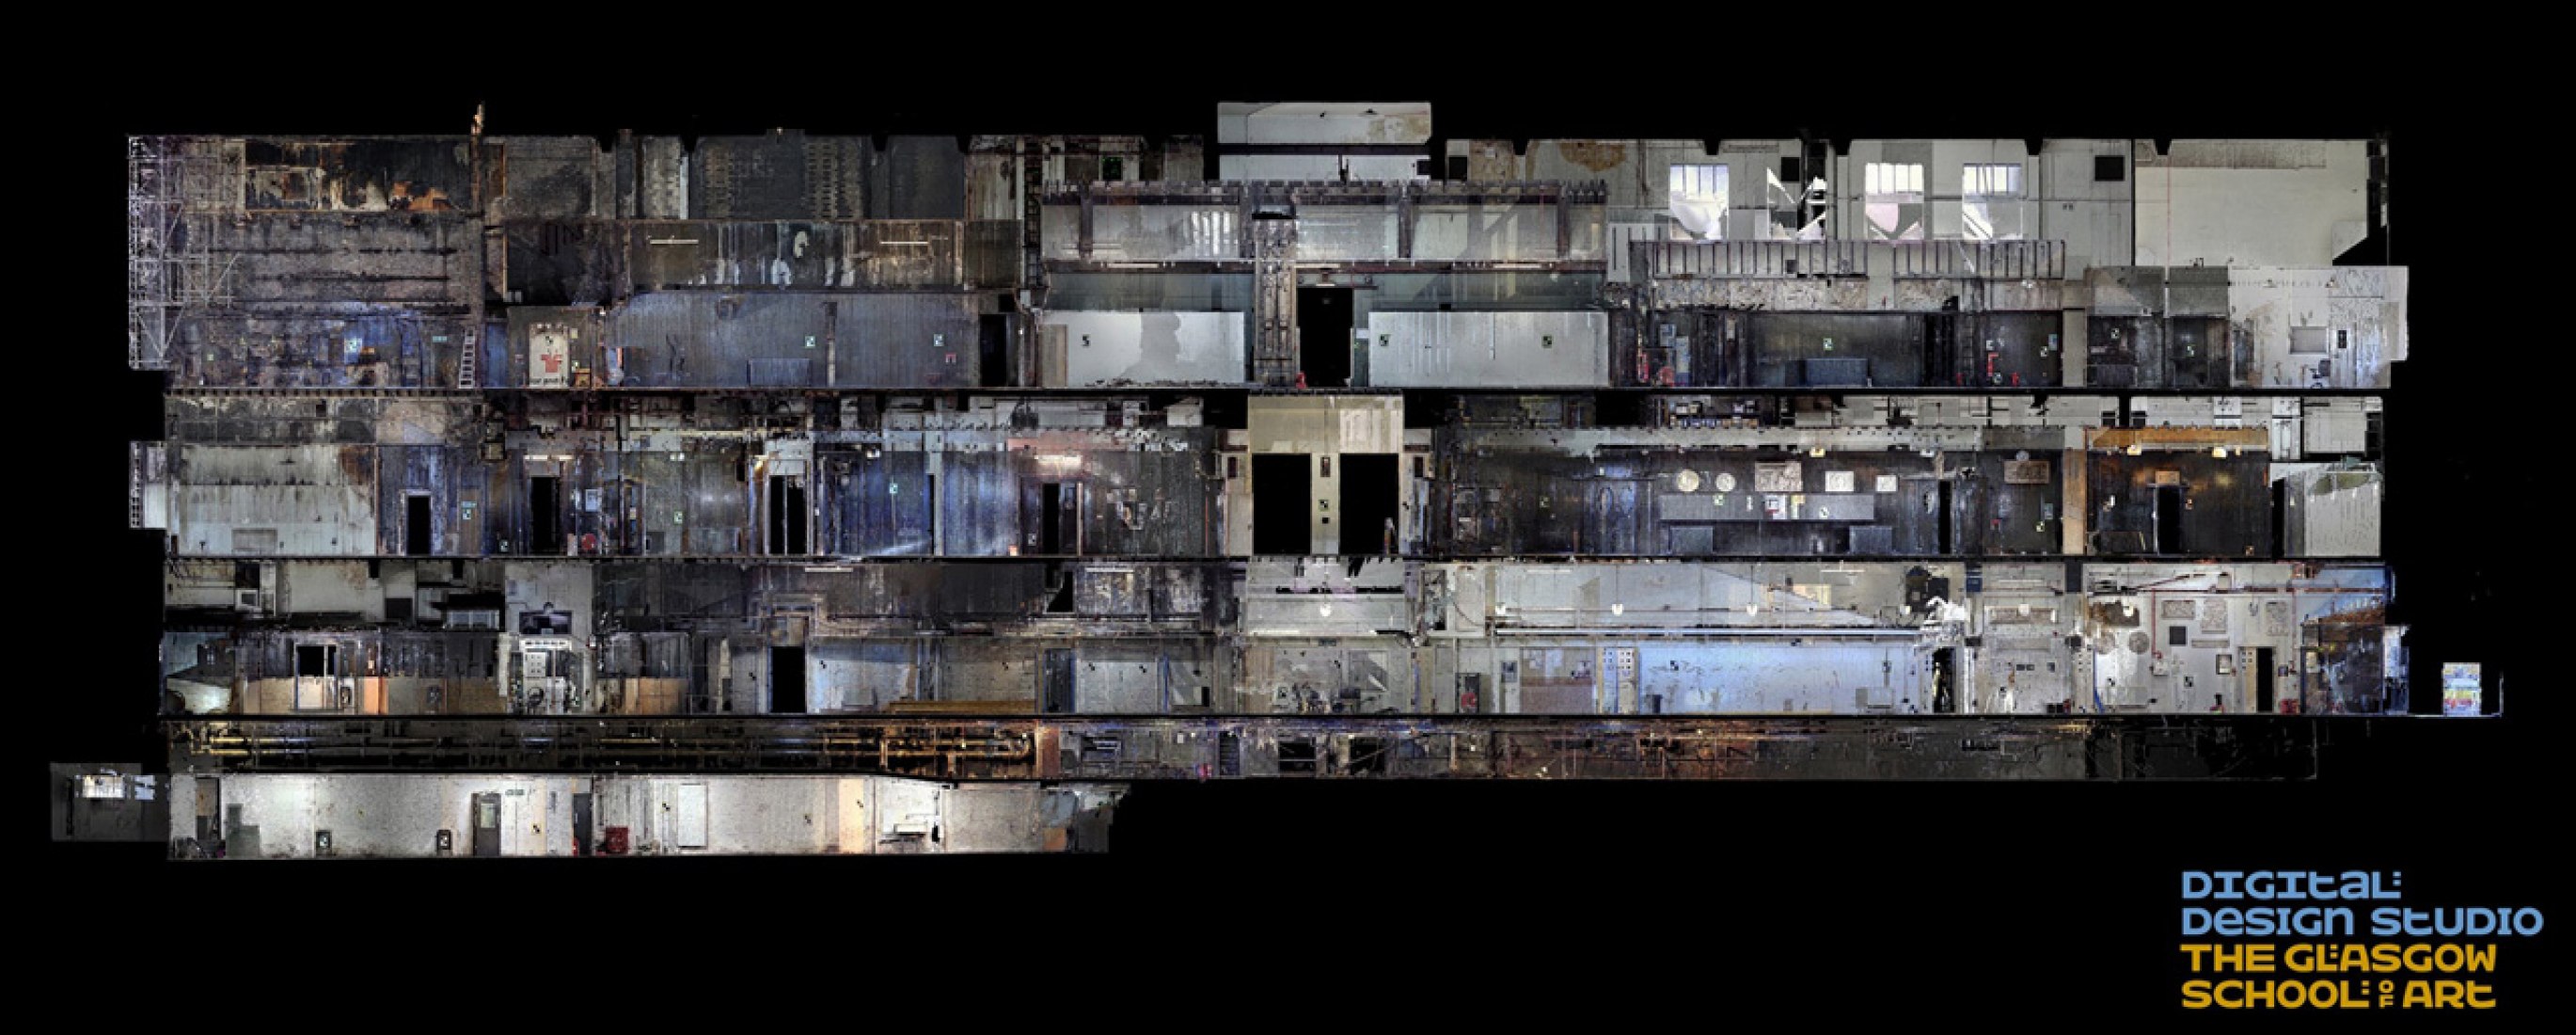  Edificio Mackintosh. Sección longitudinal de norte a sur. Cortesía de The Digital Design Studio at The Glasgow School of Art.